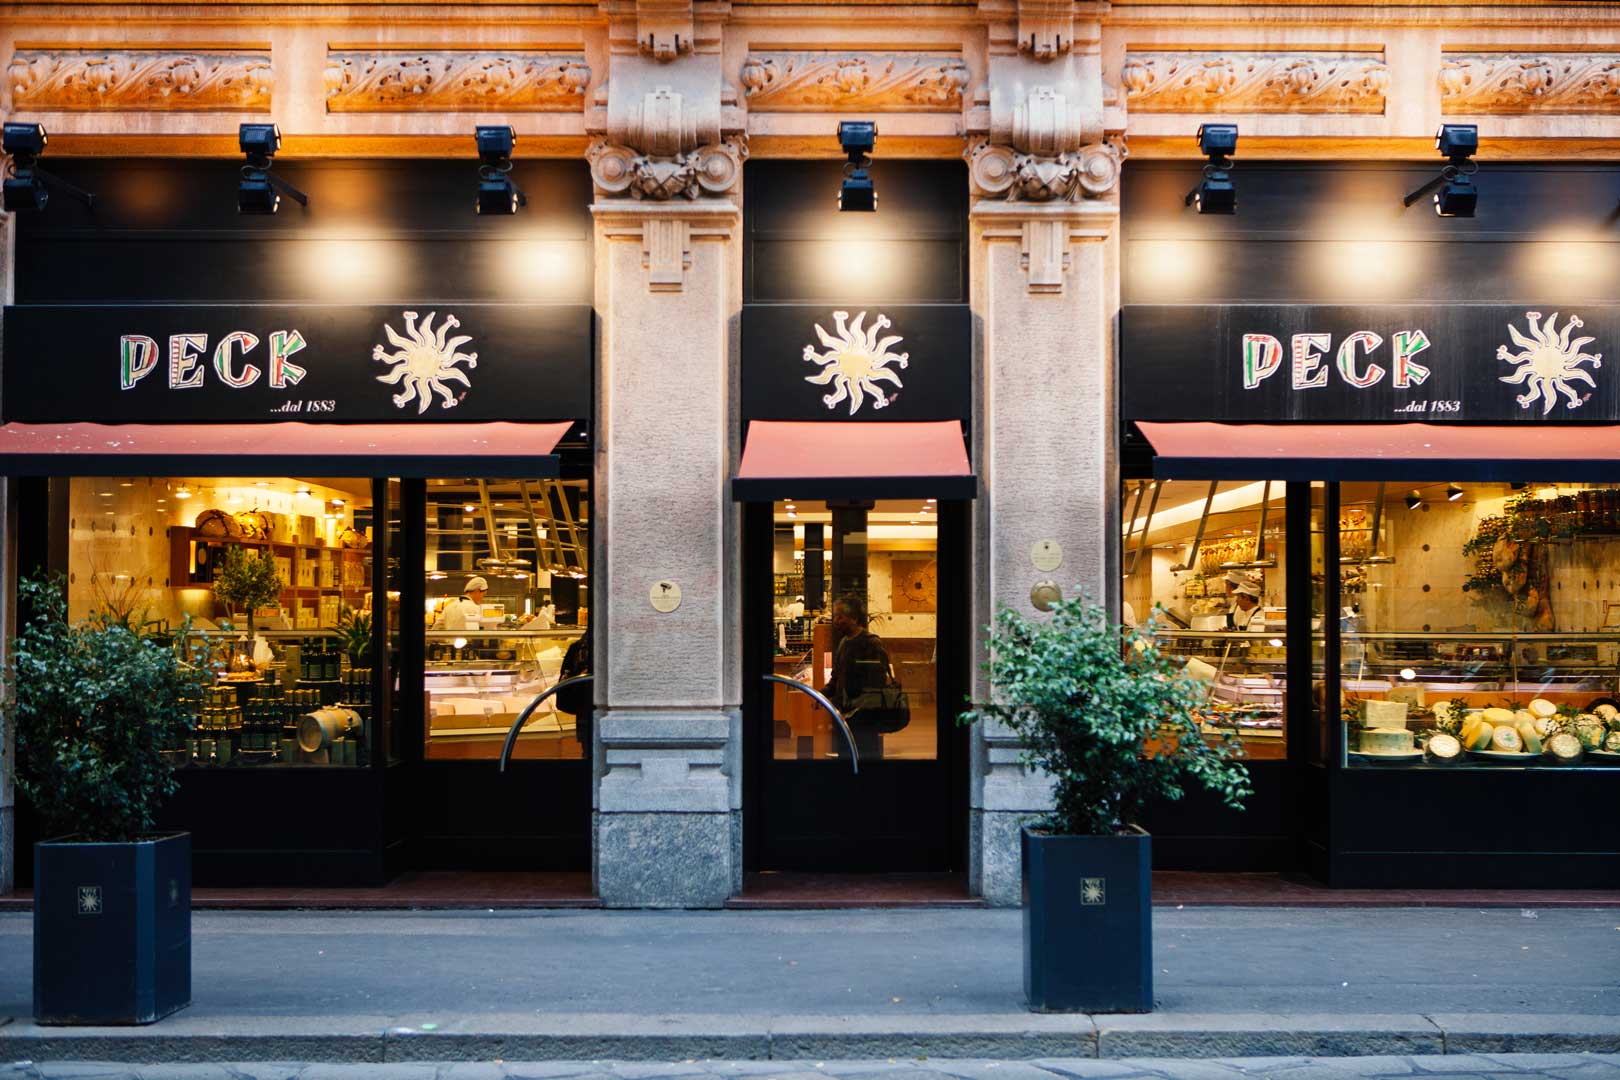 Peck - Via Spadari, Milano.